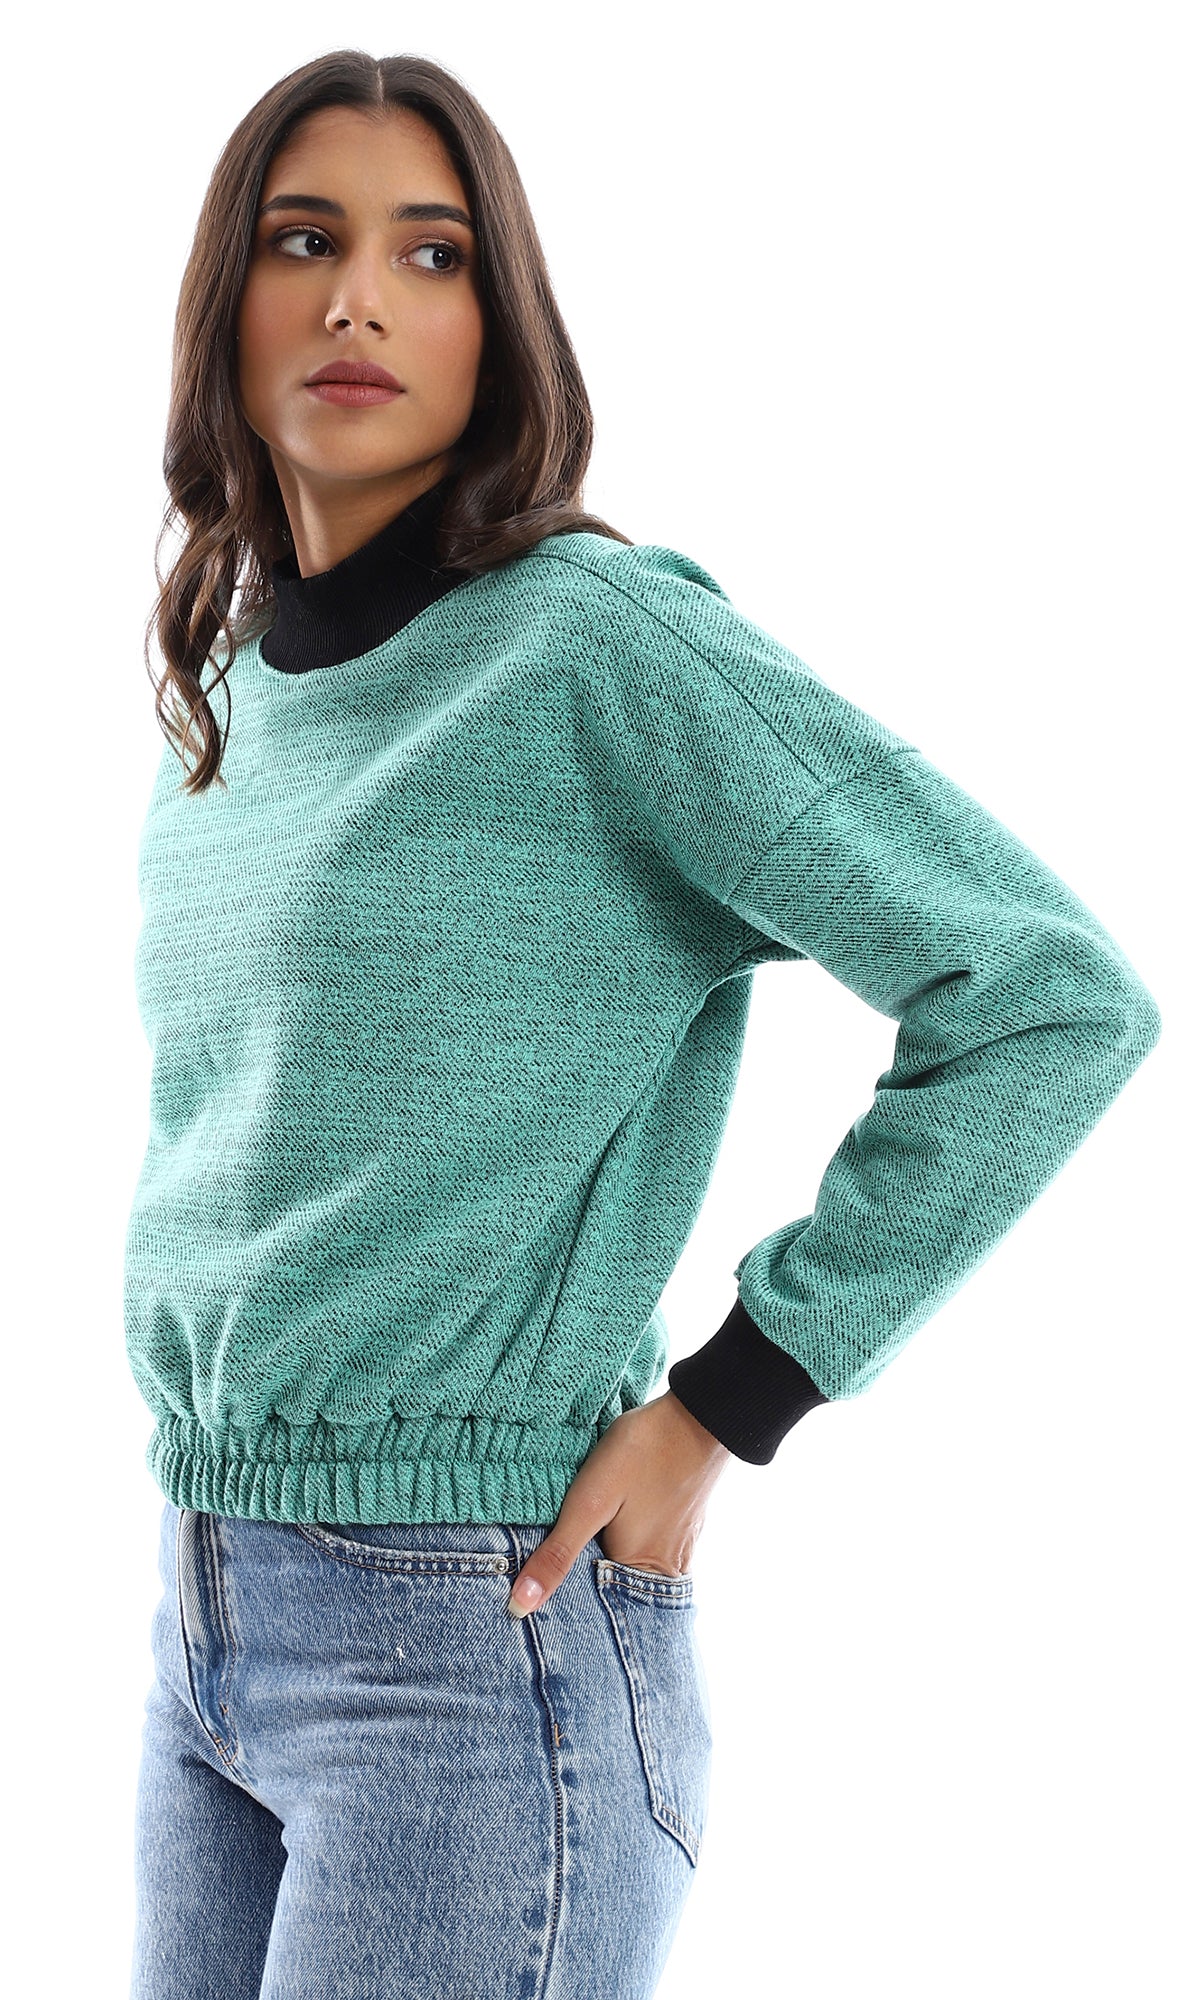 O155698 Heather Turquoise Slip On Sweatshirt With Fleece